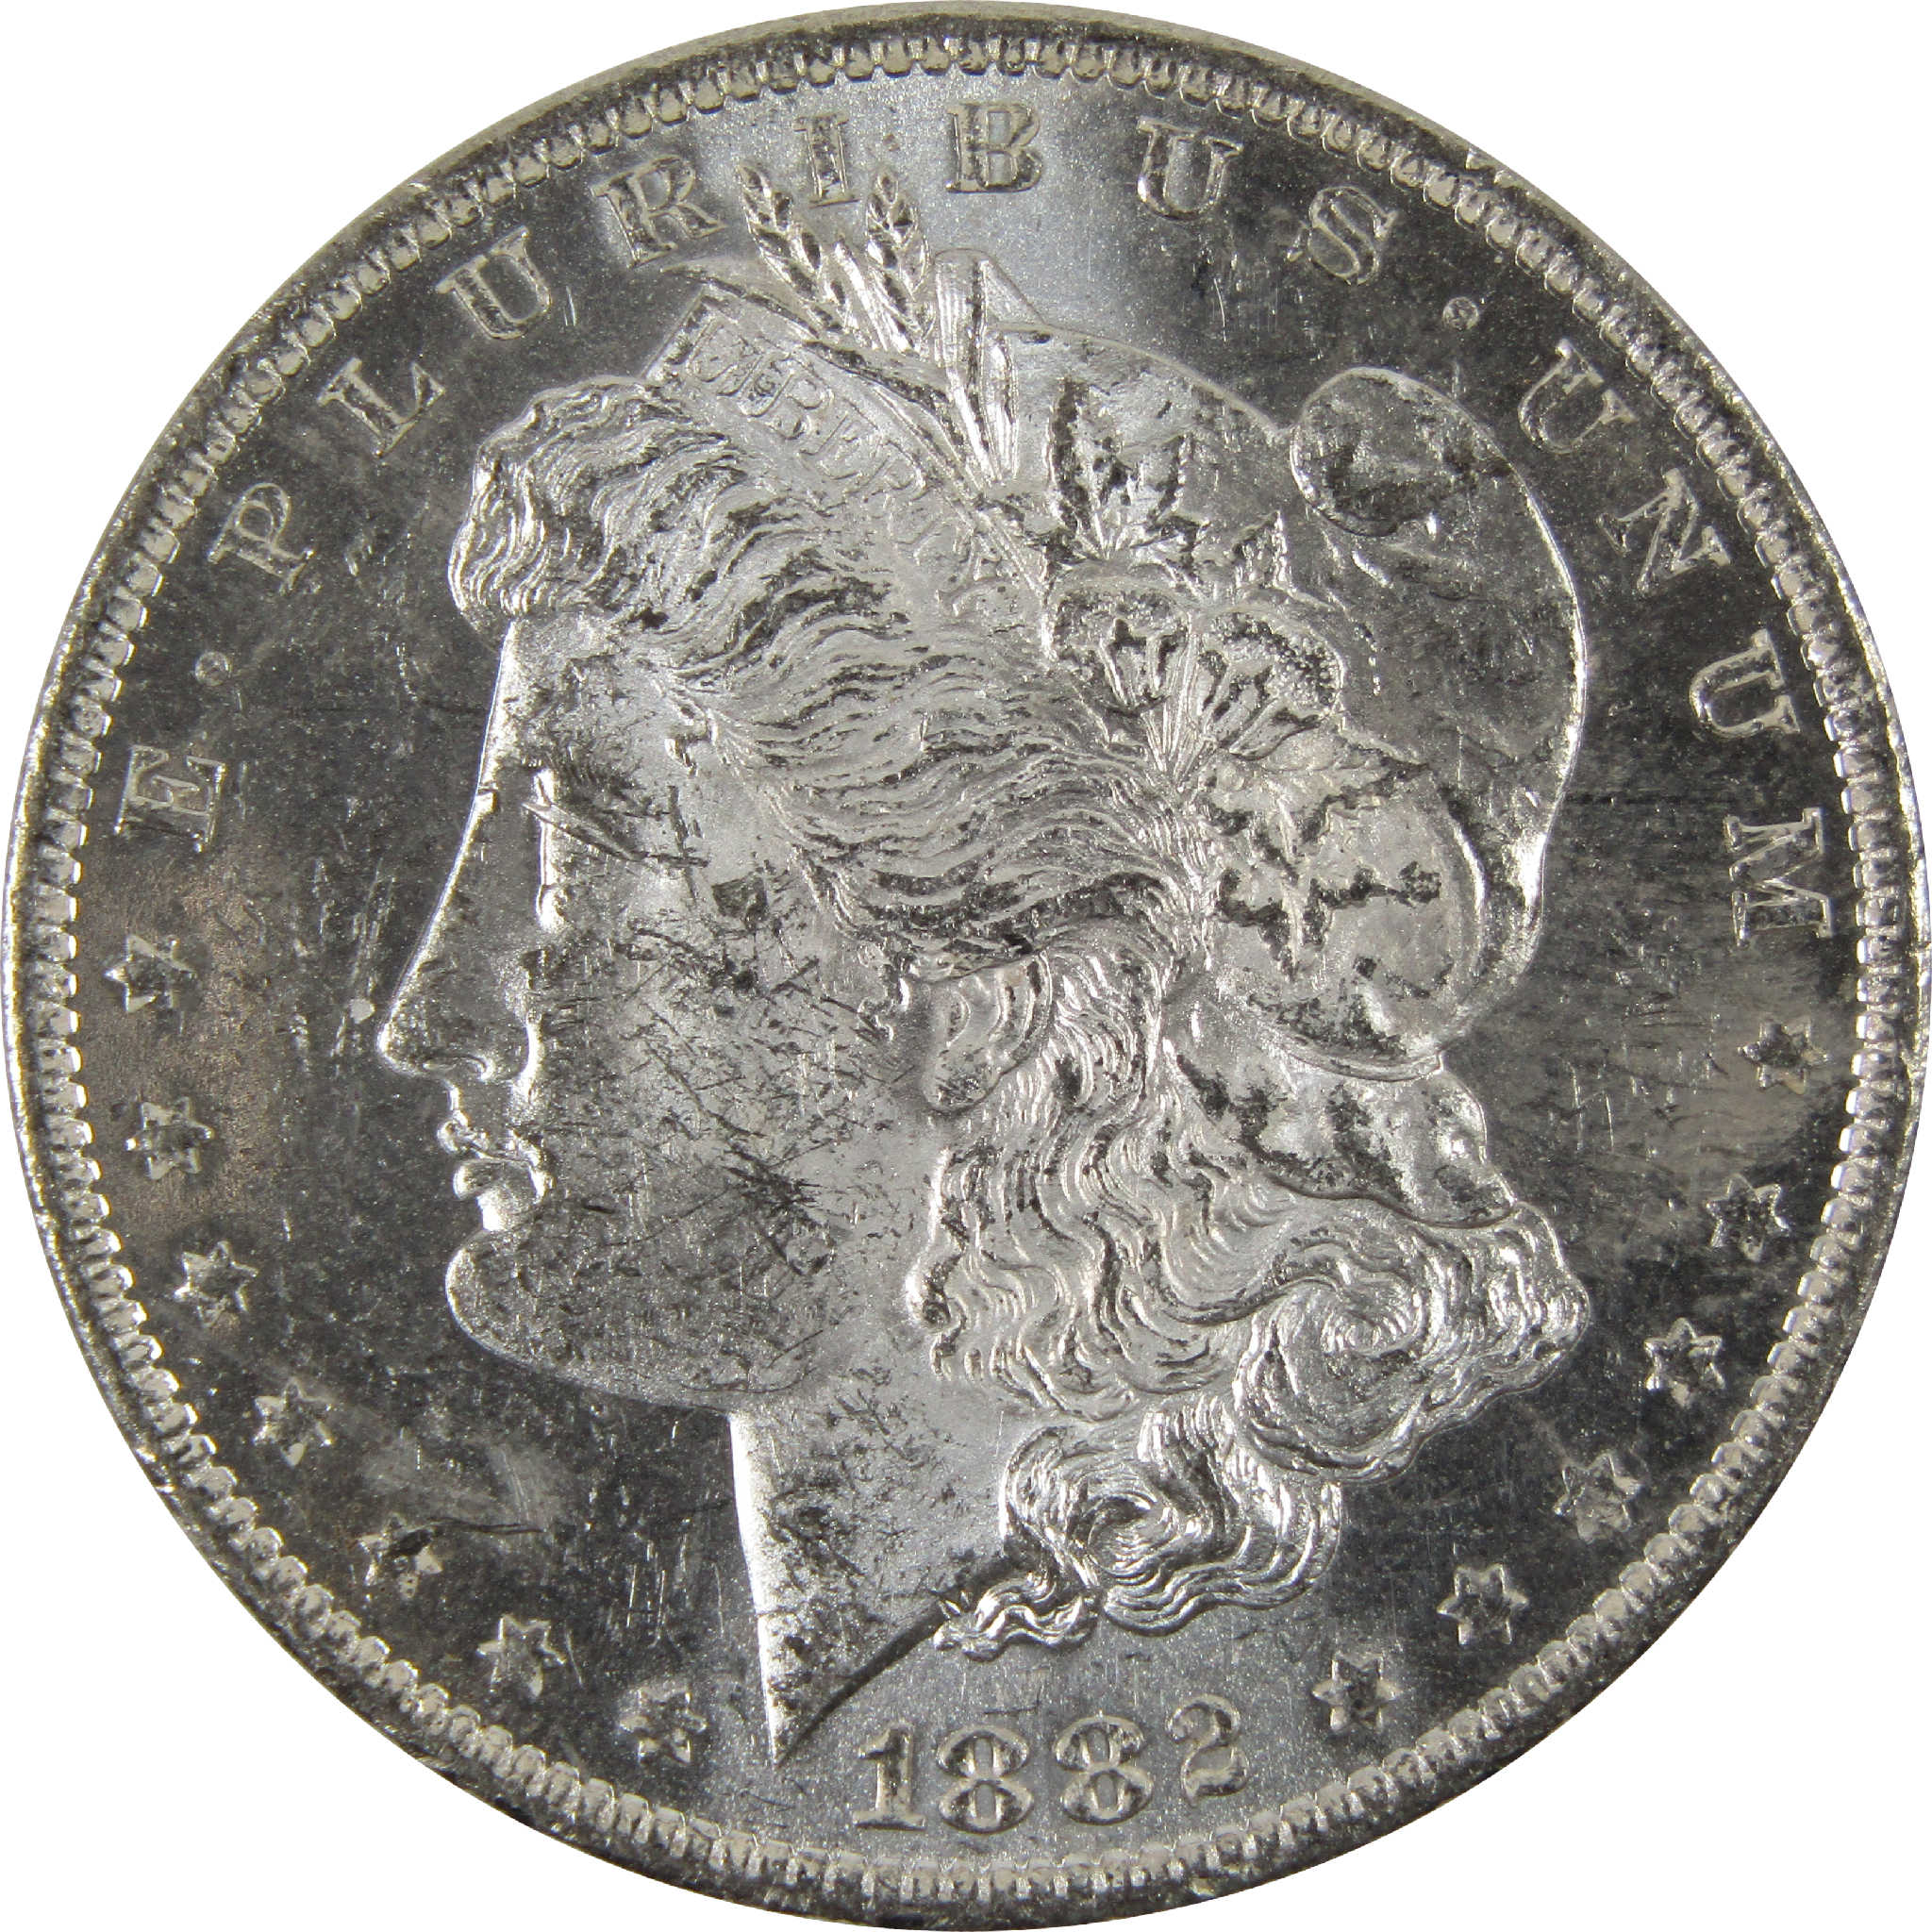 1882 O Morgan Dollar BU Uncirculated 90% Silver $1 Coin SKU:I8903 - Morgan coin - Morgan silver dollar - Morgan silver dollar for sale - Profile Coins &amp; Collectibles